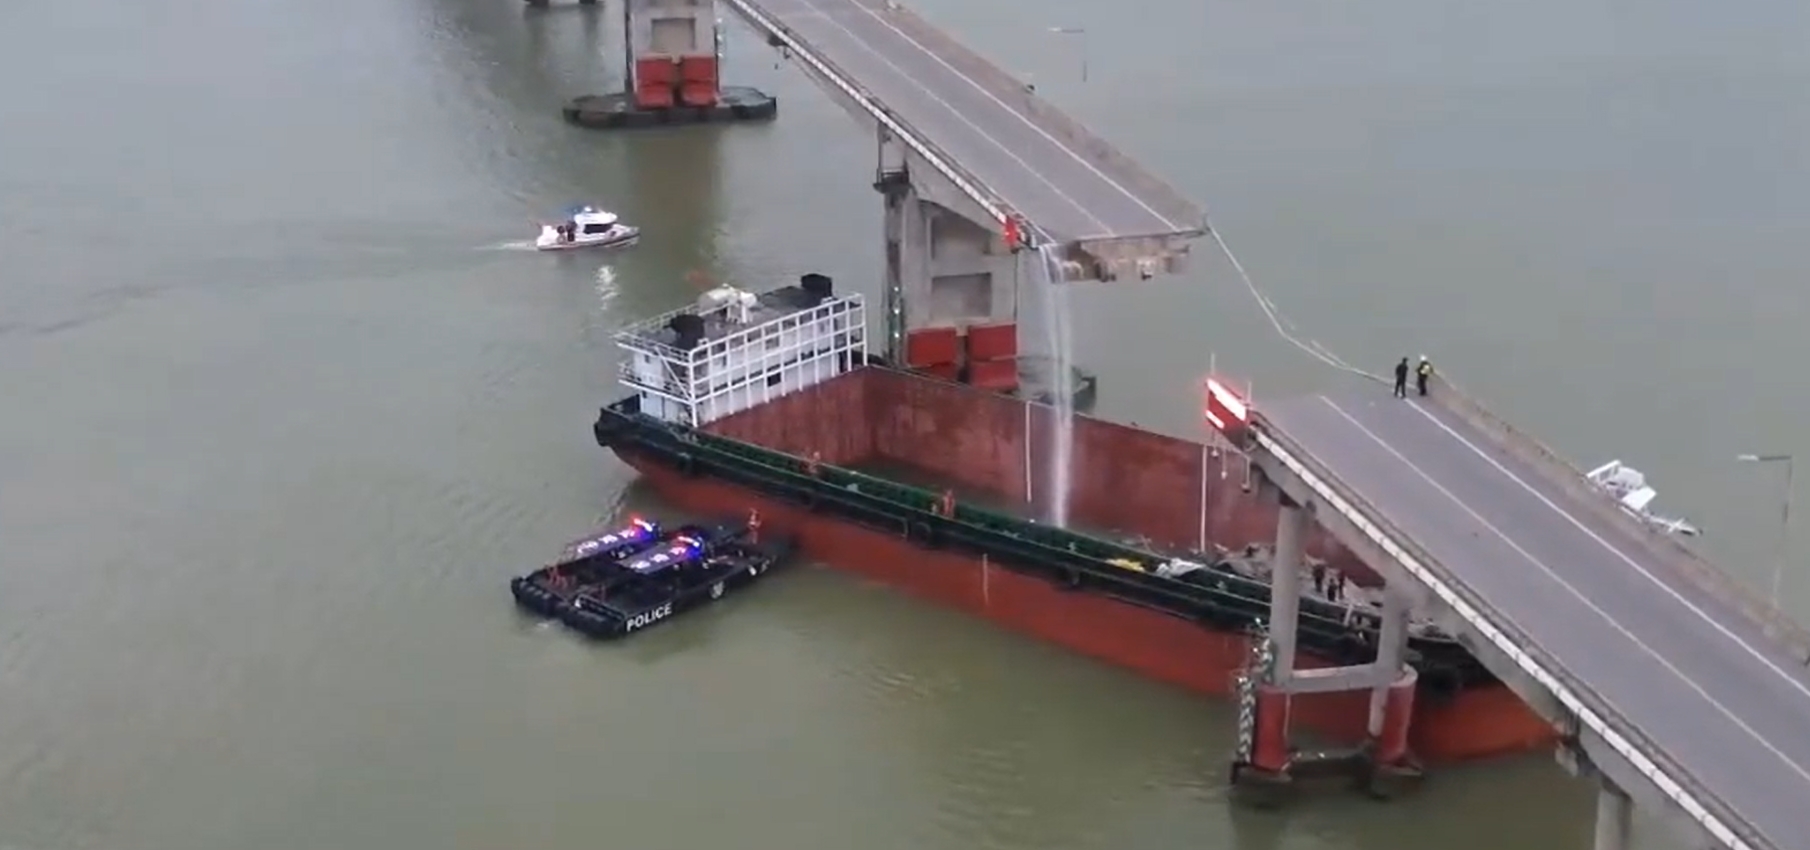 China Cargo Ship Smashes Through Bridge in Guangzhou